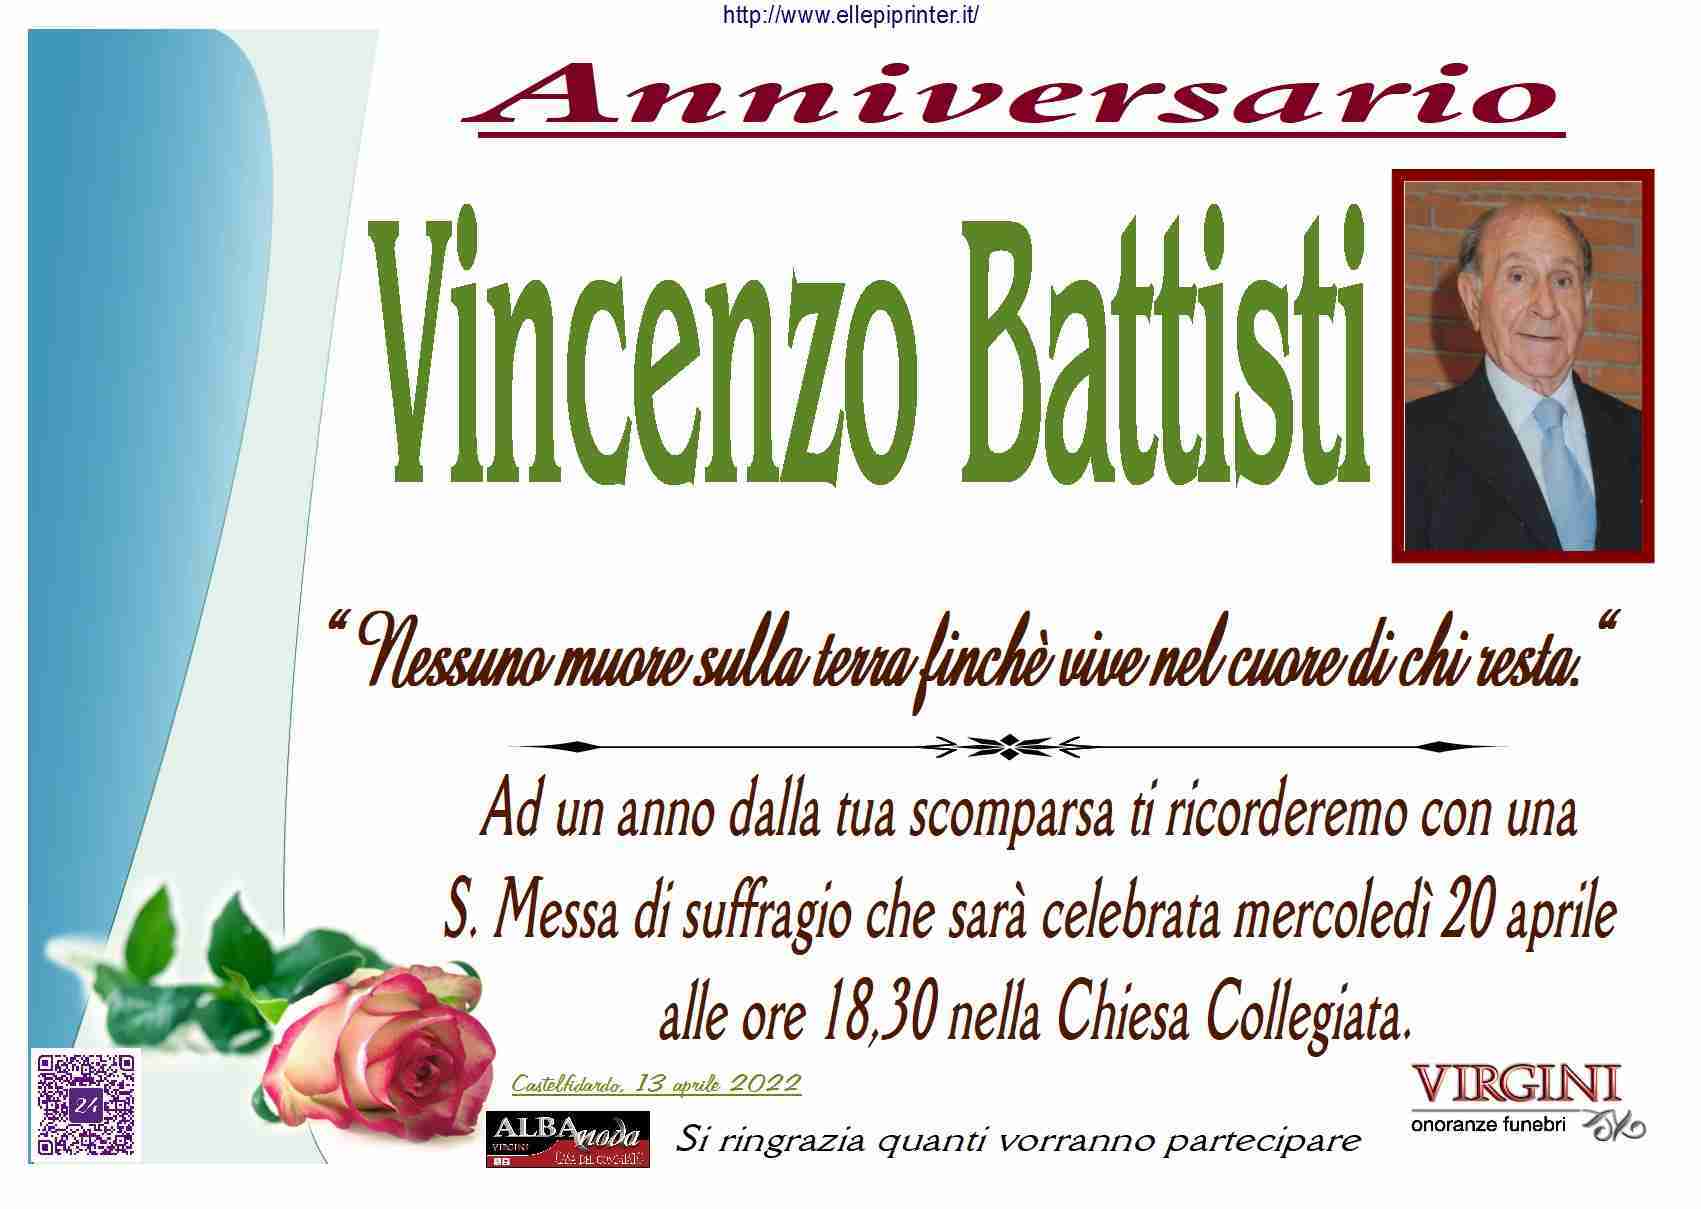 Vincenzo Battisti